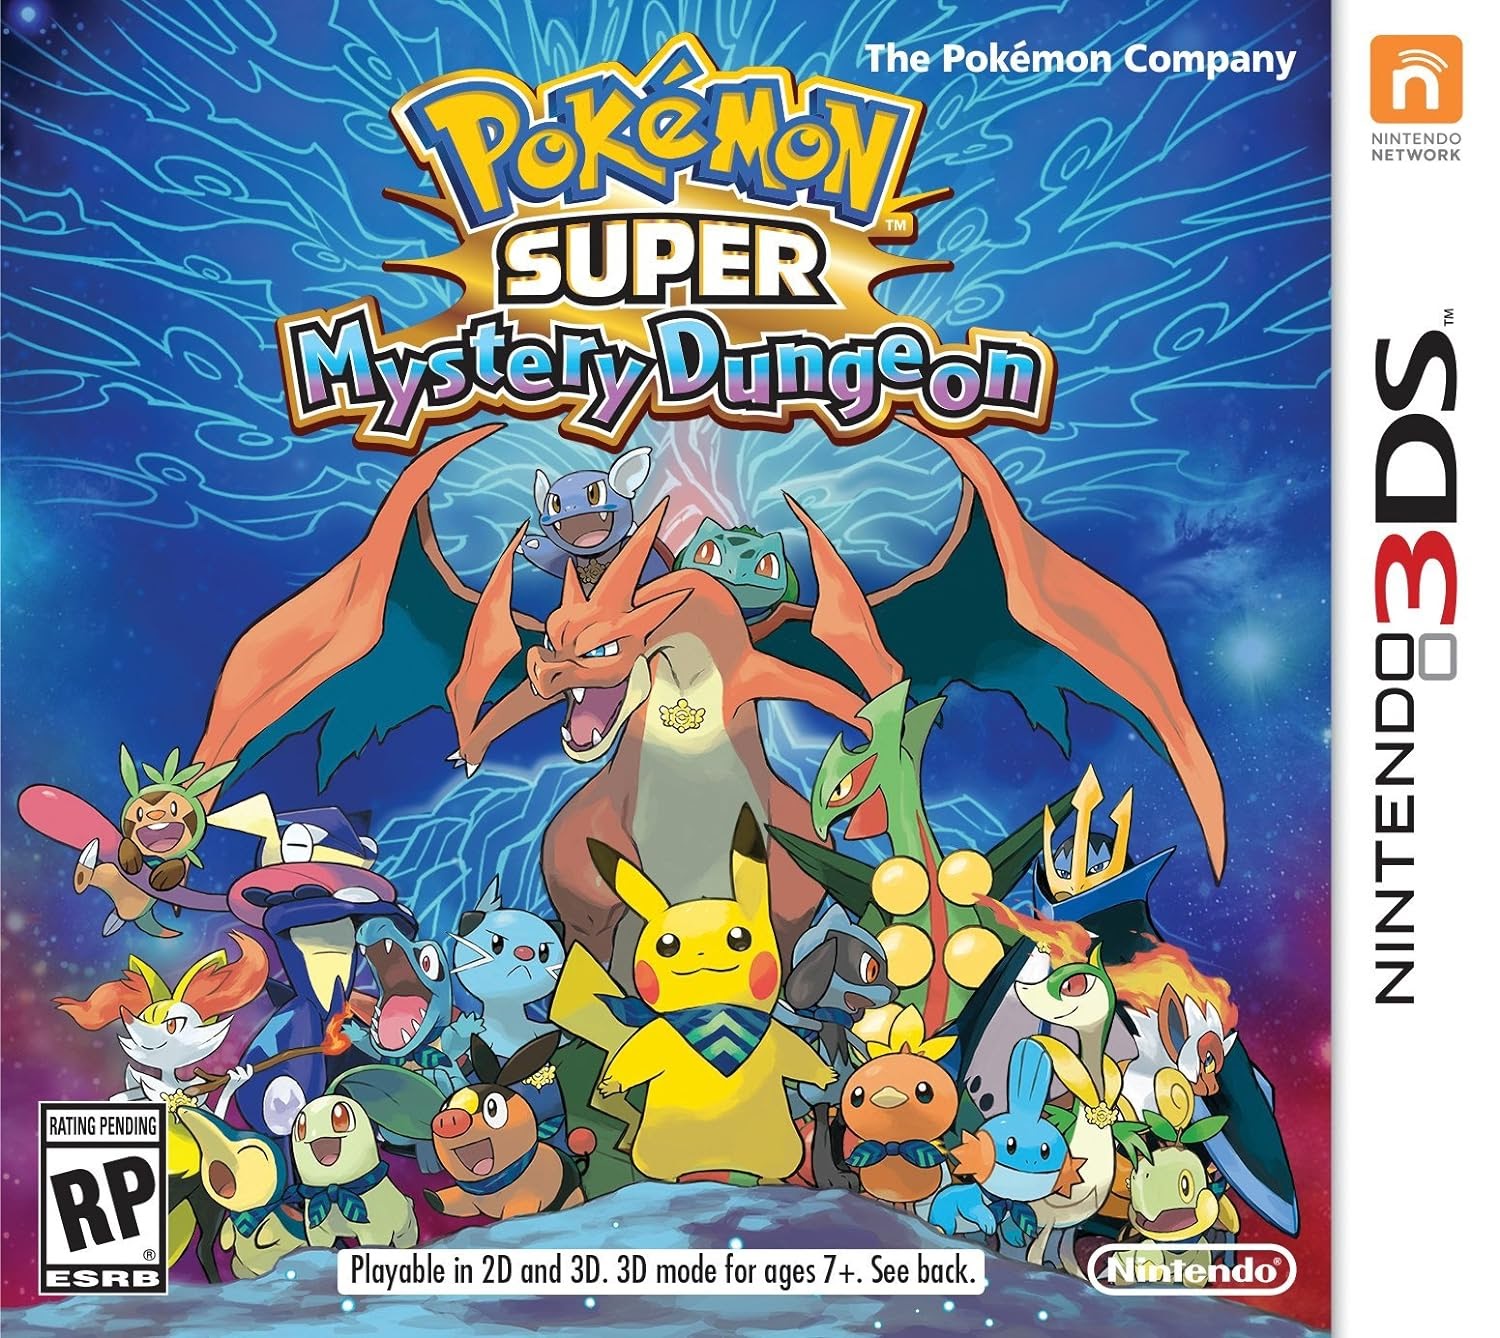 Mega Diance revelado pela The Pokémon Company - Nintendo Blast